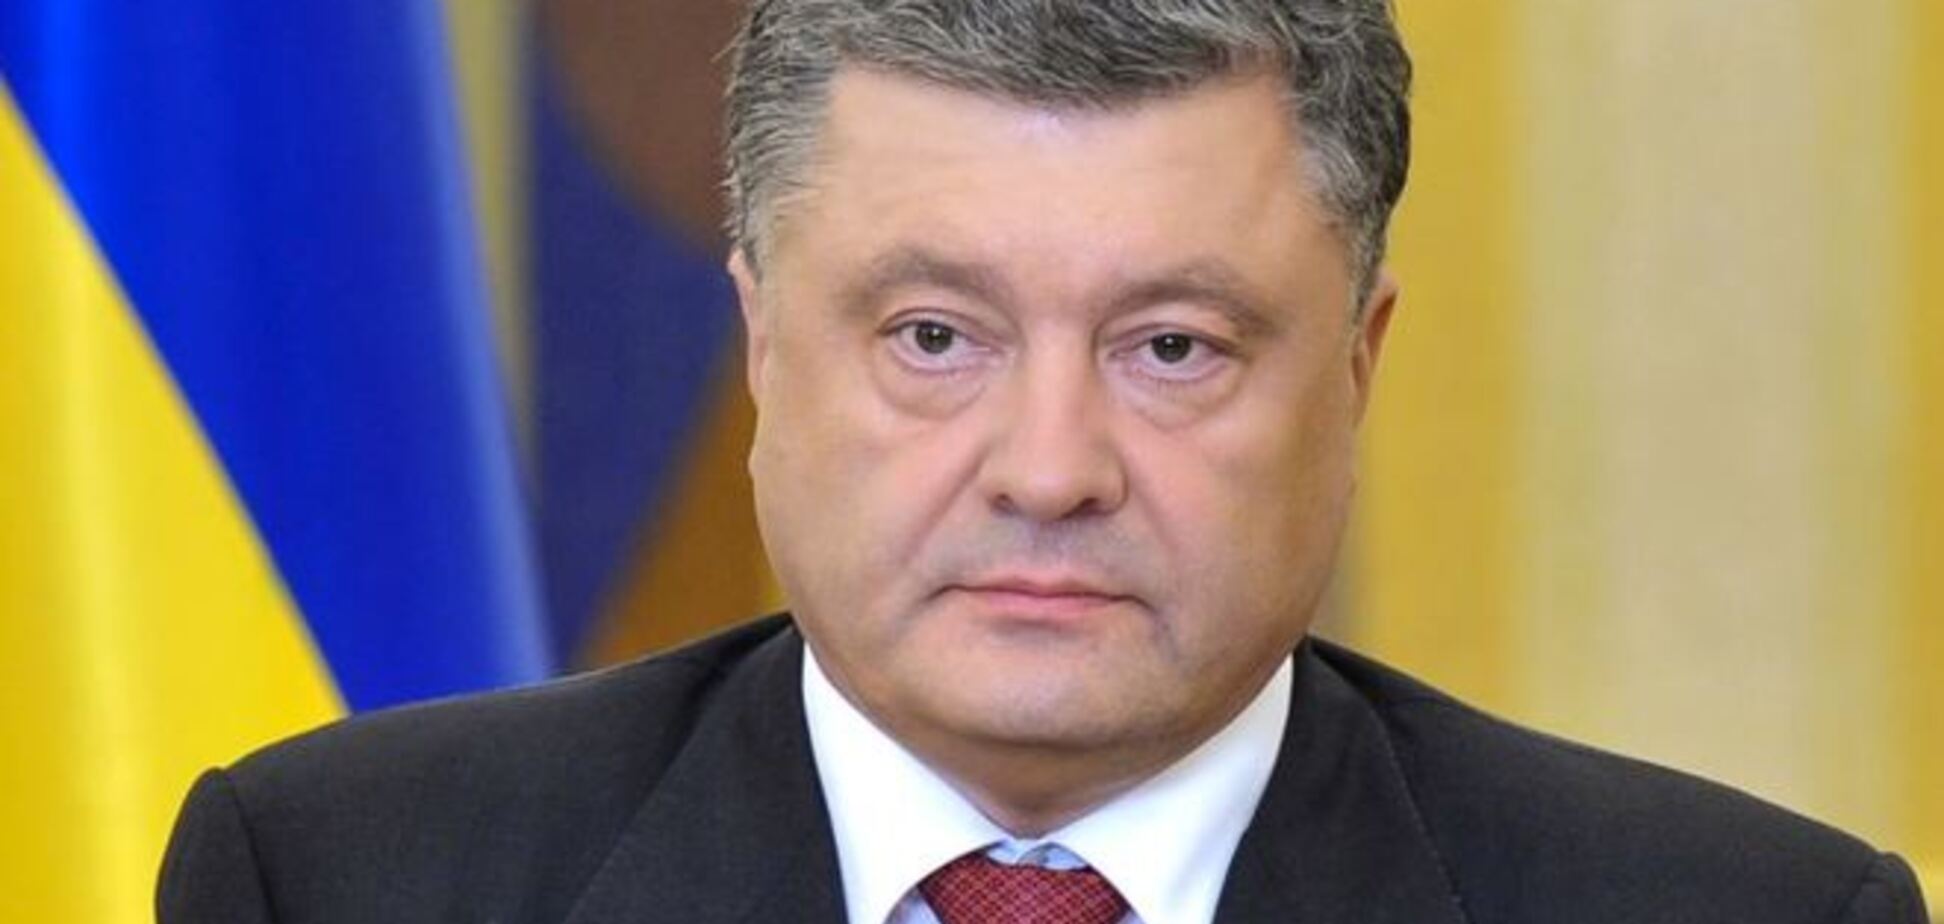 Порошенко назвал главное достижение Украины, которое она показала на Донбассе